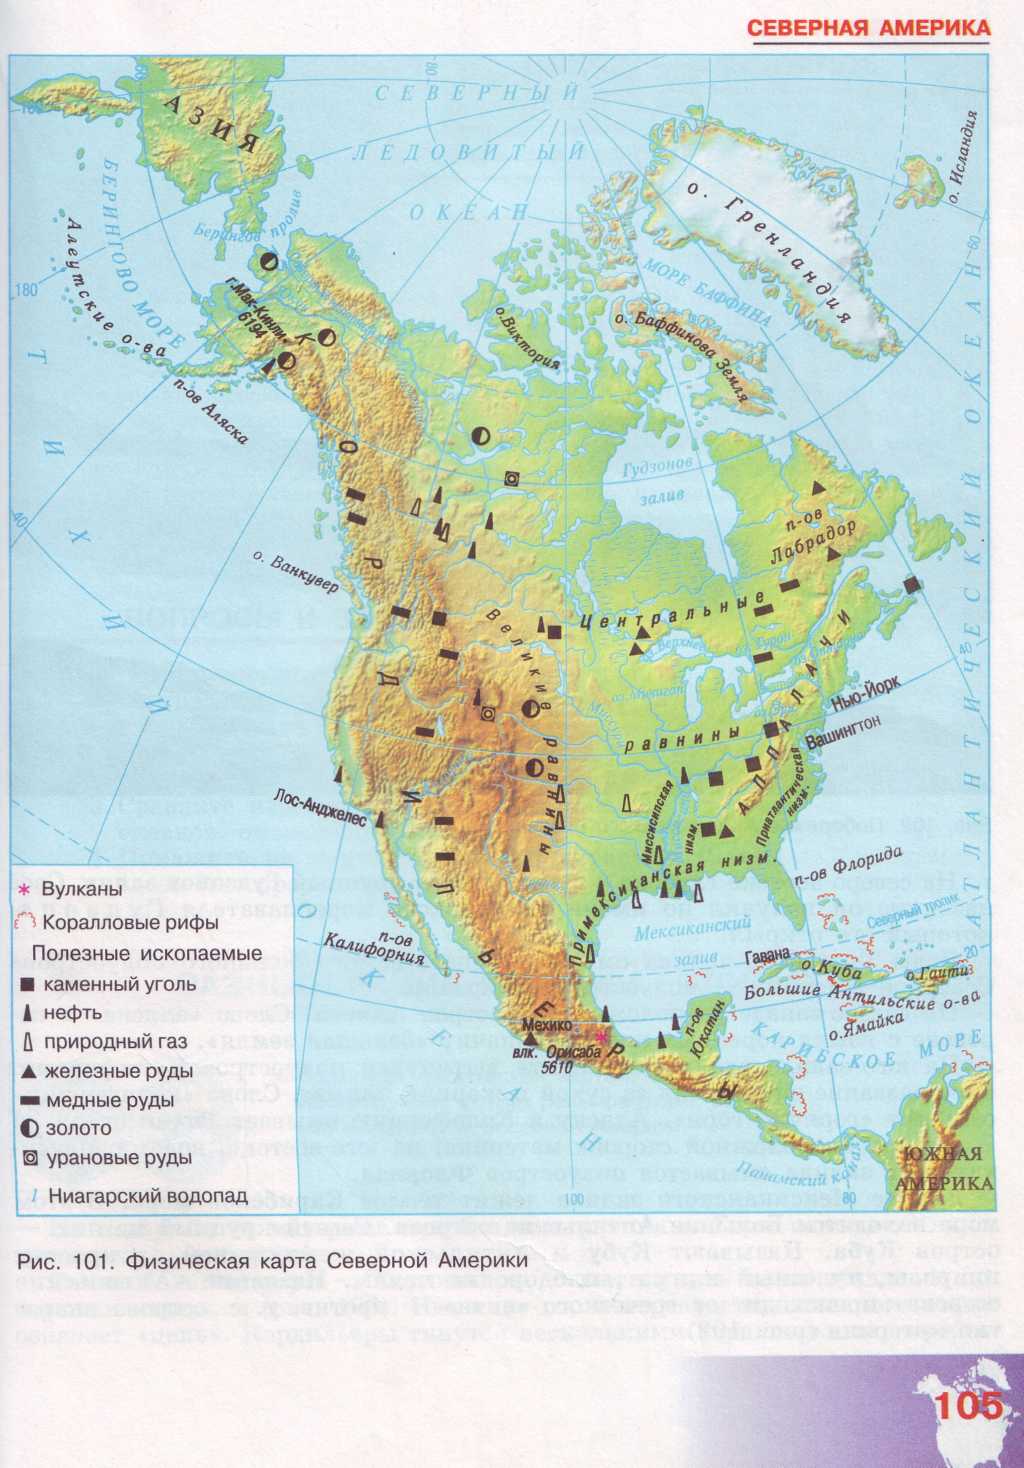 Полезные ископаемые северной америки на контурной карте. Полезные ископаемые Северной Америки на карте. Карта Северной Америки месторождения полезных ископаемых. Крата полезных ископаемфх Северной Америки.